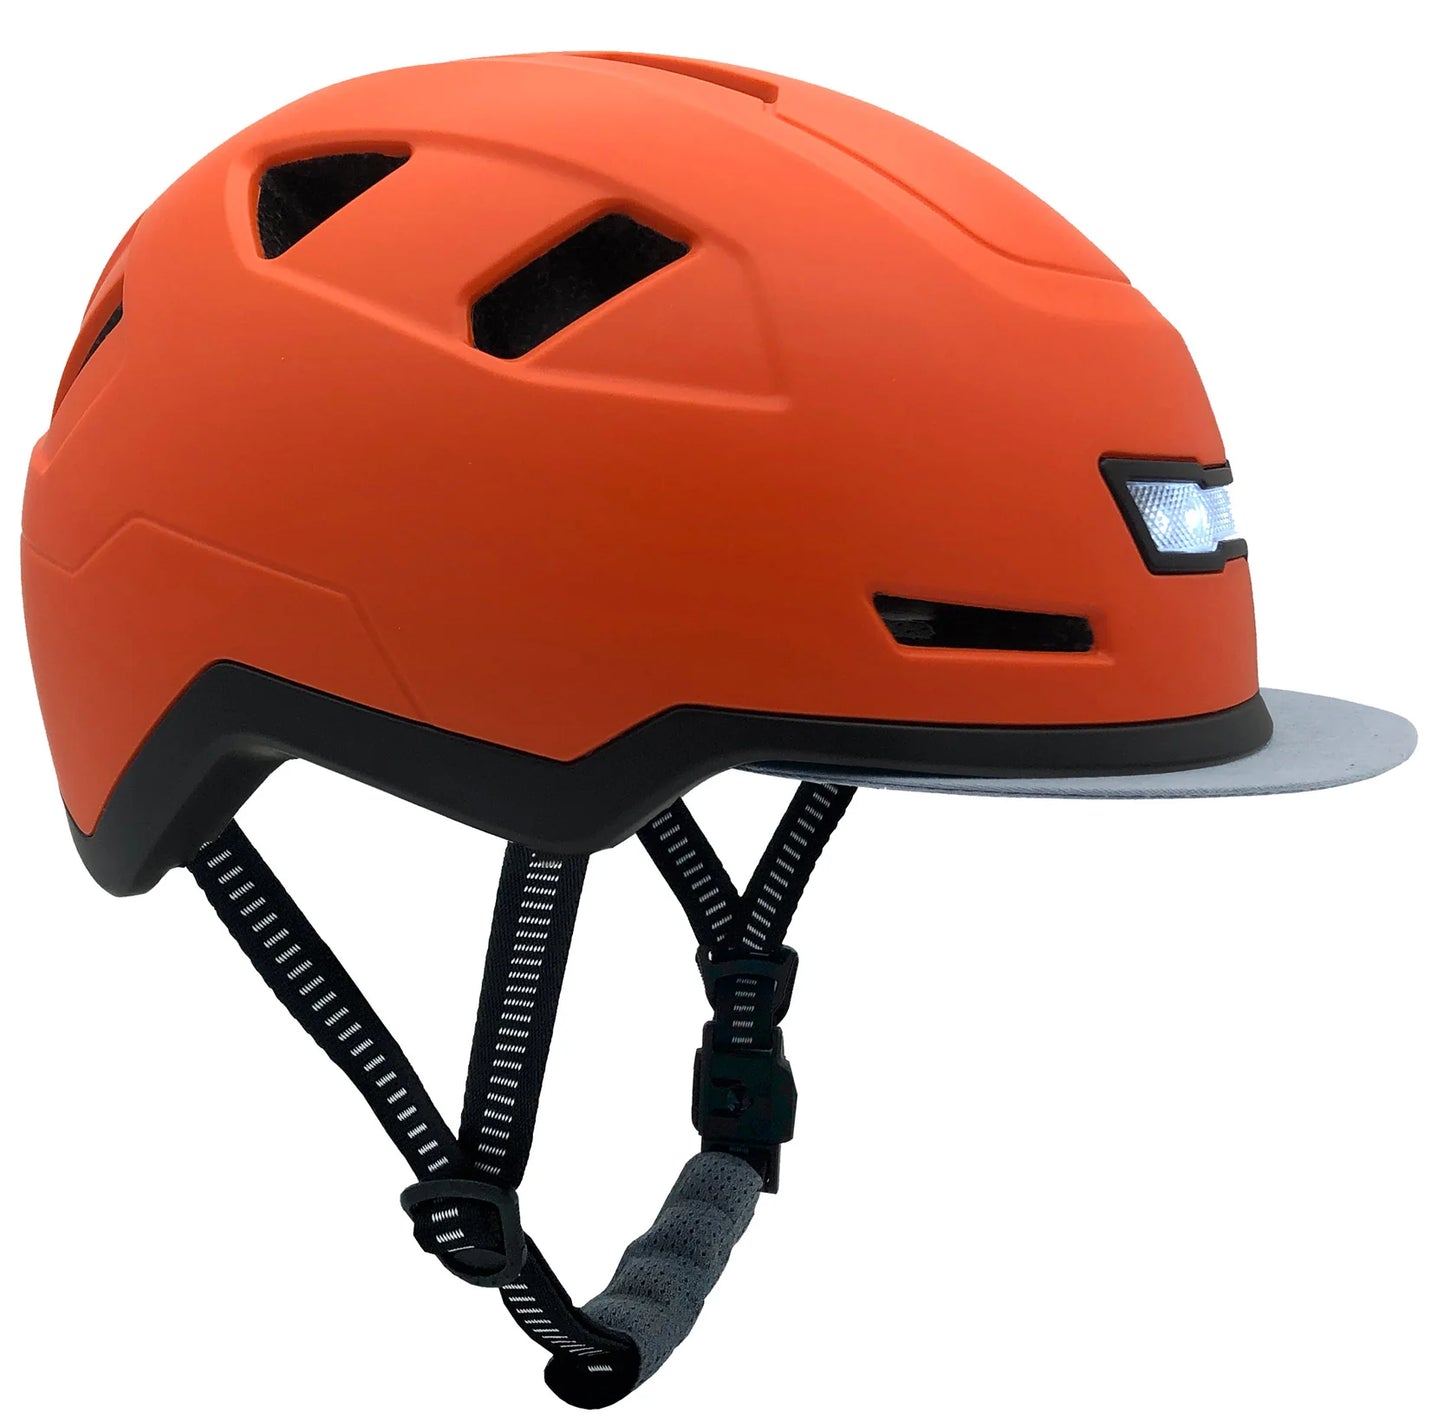 Dutch | XNITO Helmet | E-Bike Helmet